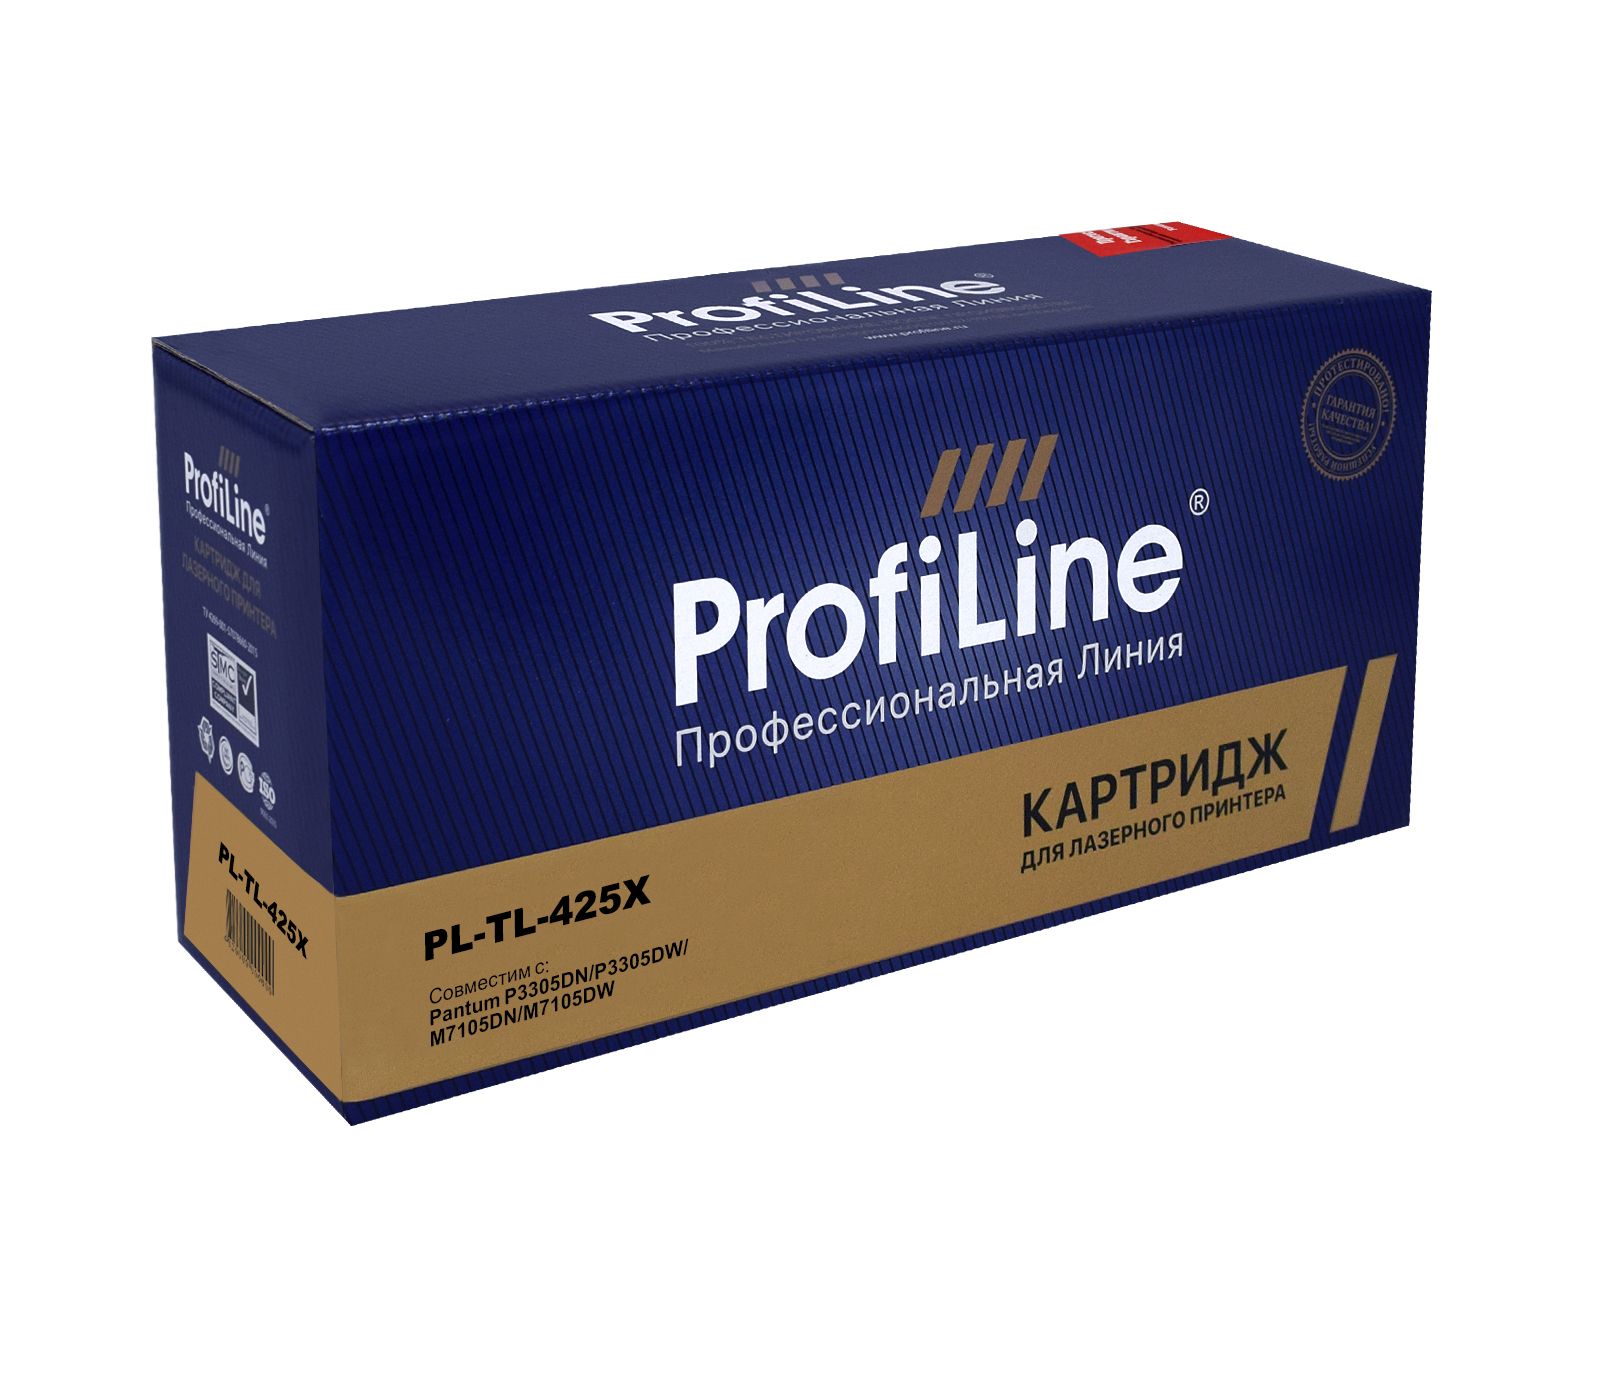 Картридж PL-TL-425X для принтеров Pantum P3305DN/P3305DW/M7105DN/M7105DW 6000 копий ProfiLine